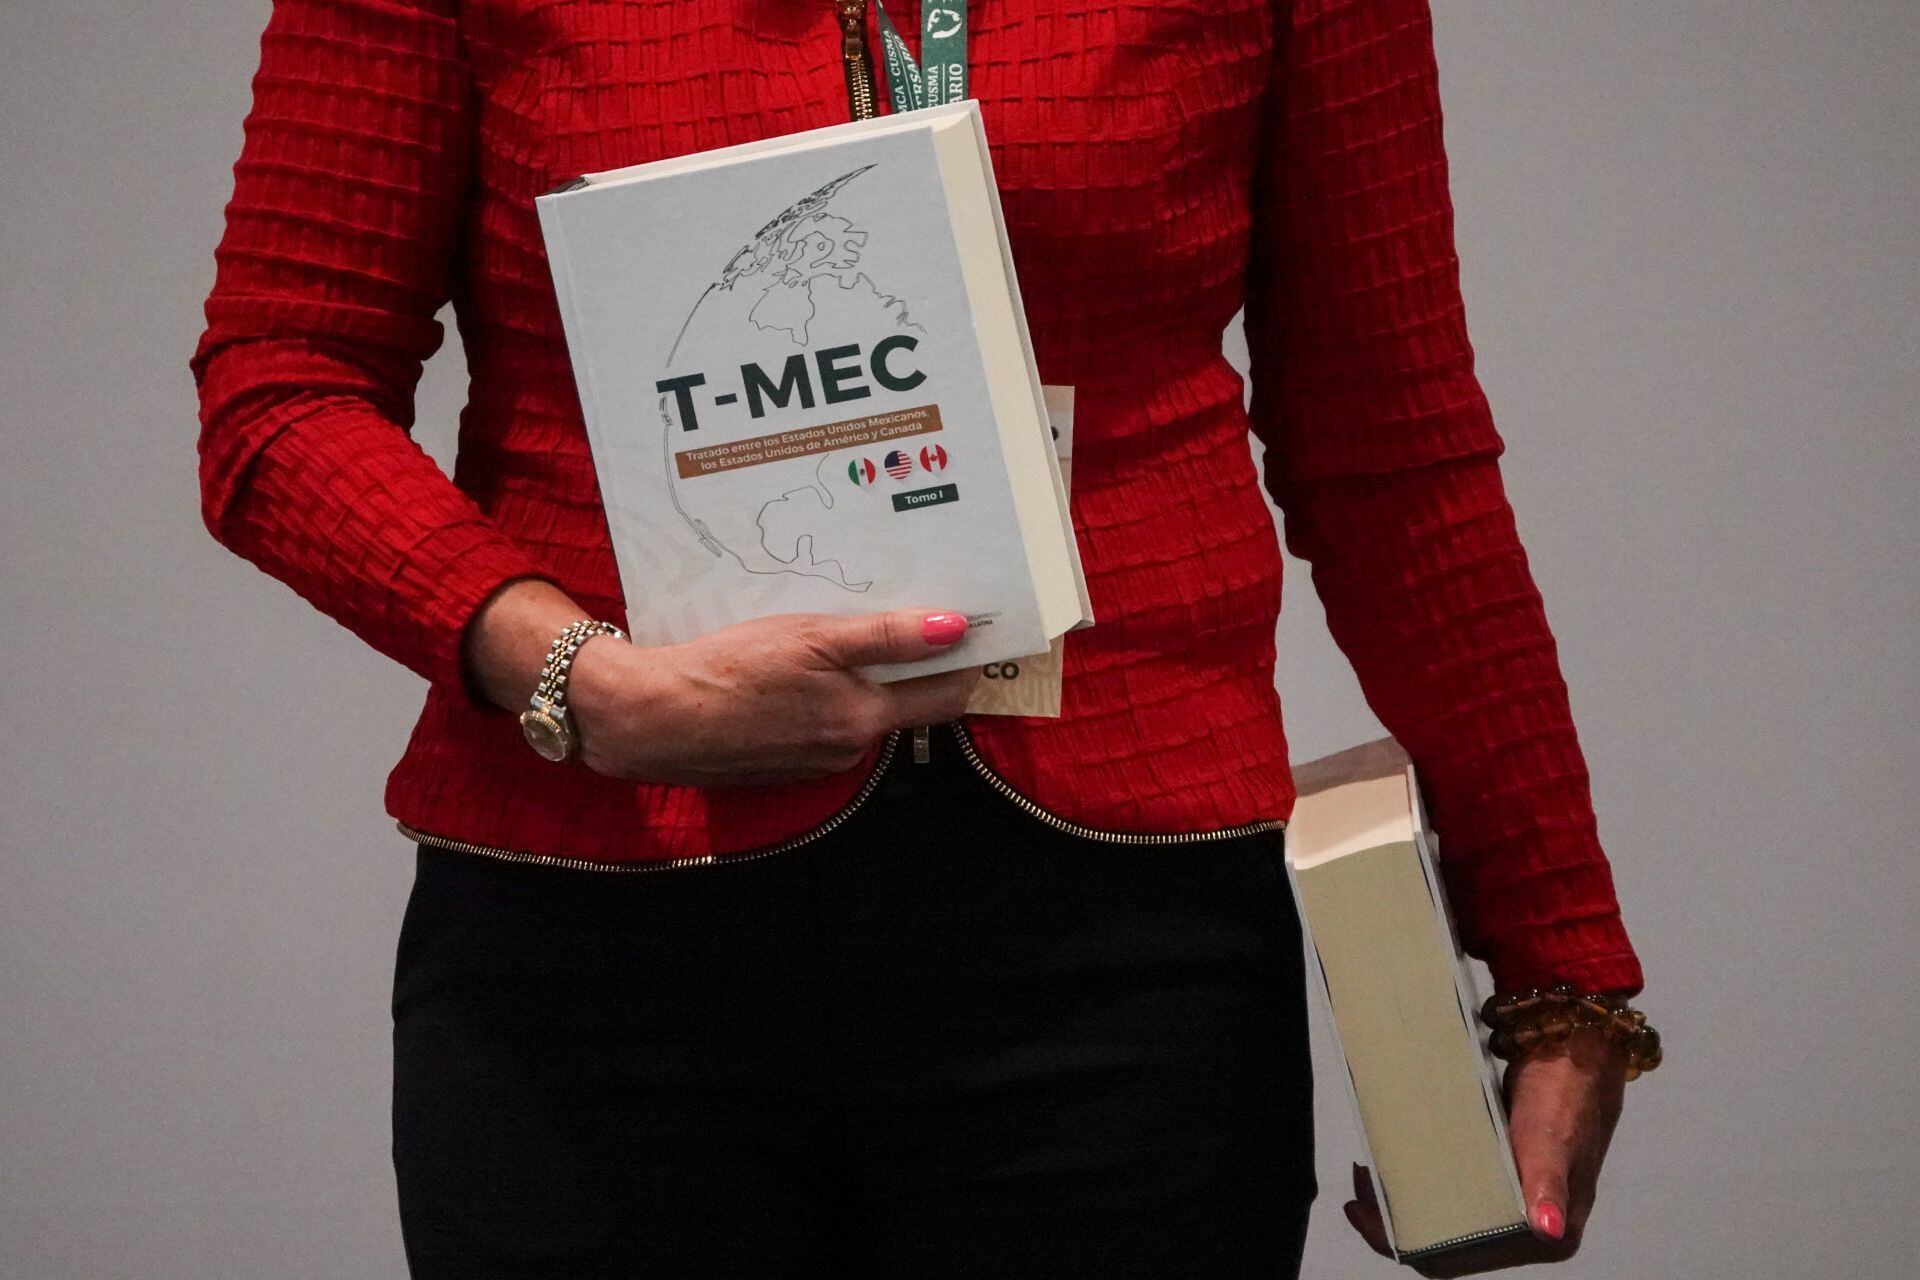 Eso sí da miedo: Controversia por T-MEC costaría a México hasta 30 mil mdd